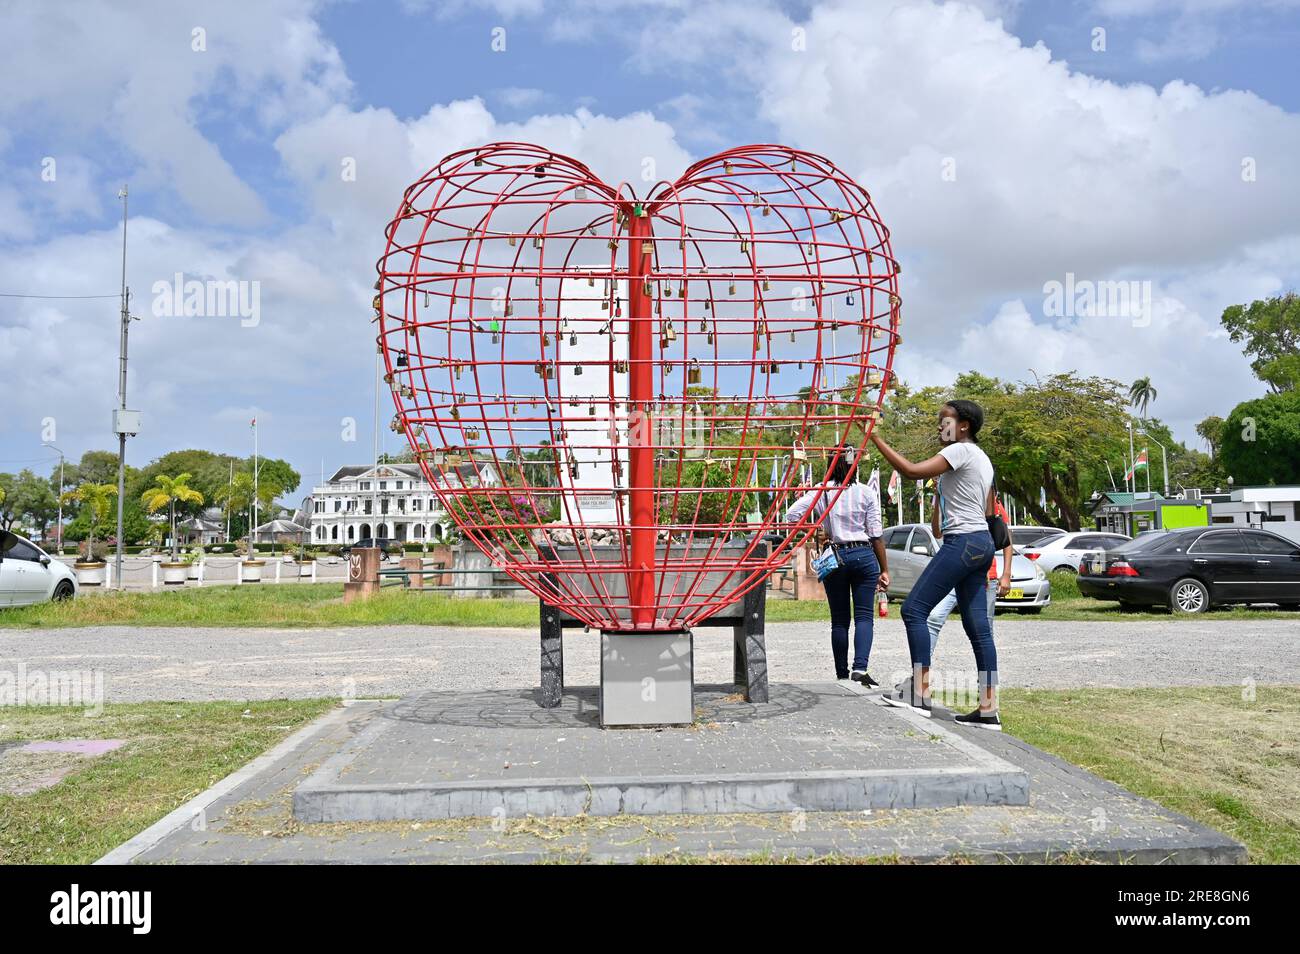 Heart of Love Heart est une œuvre d'art à Paramaribo, Surinam. Il est destiné aux amoureux d'accrocher un verrou d'amour. Une jeune fille y regarde de près. Banque D'Images